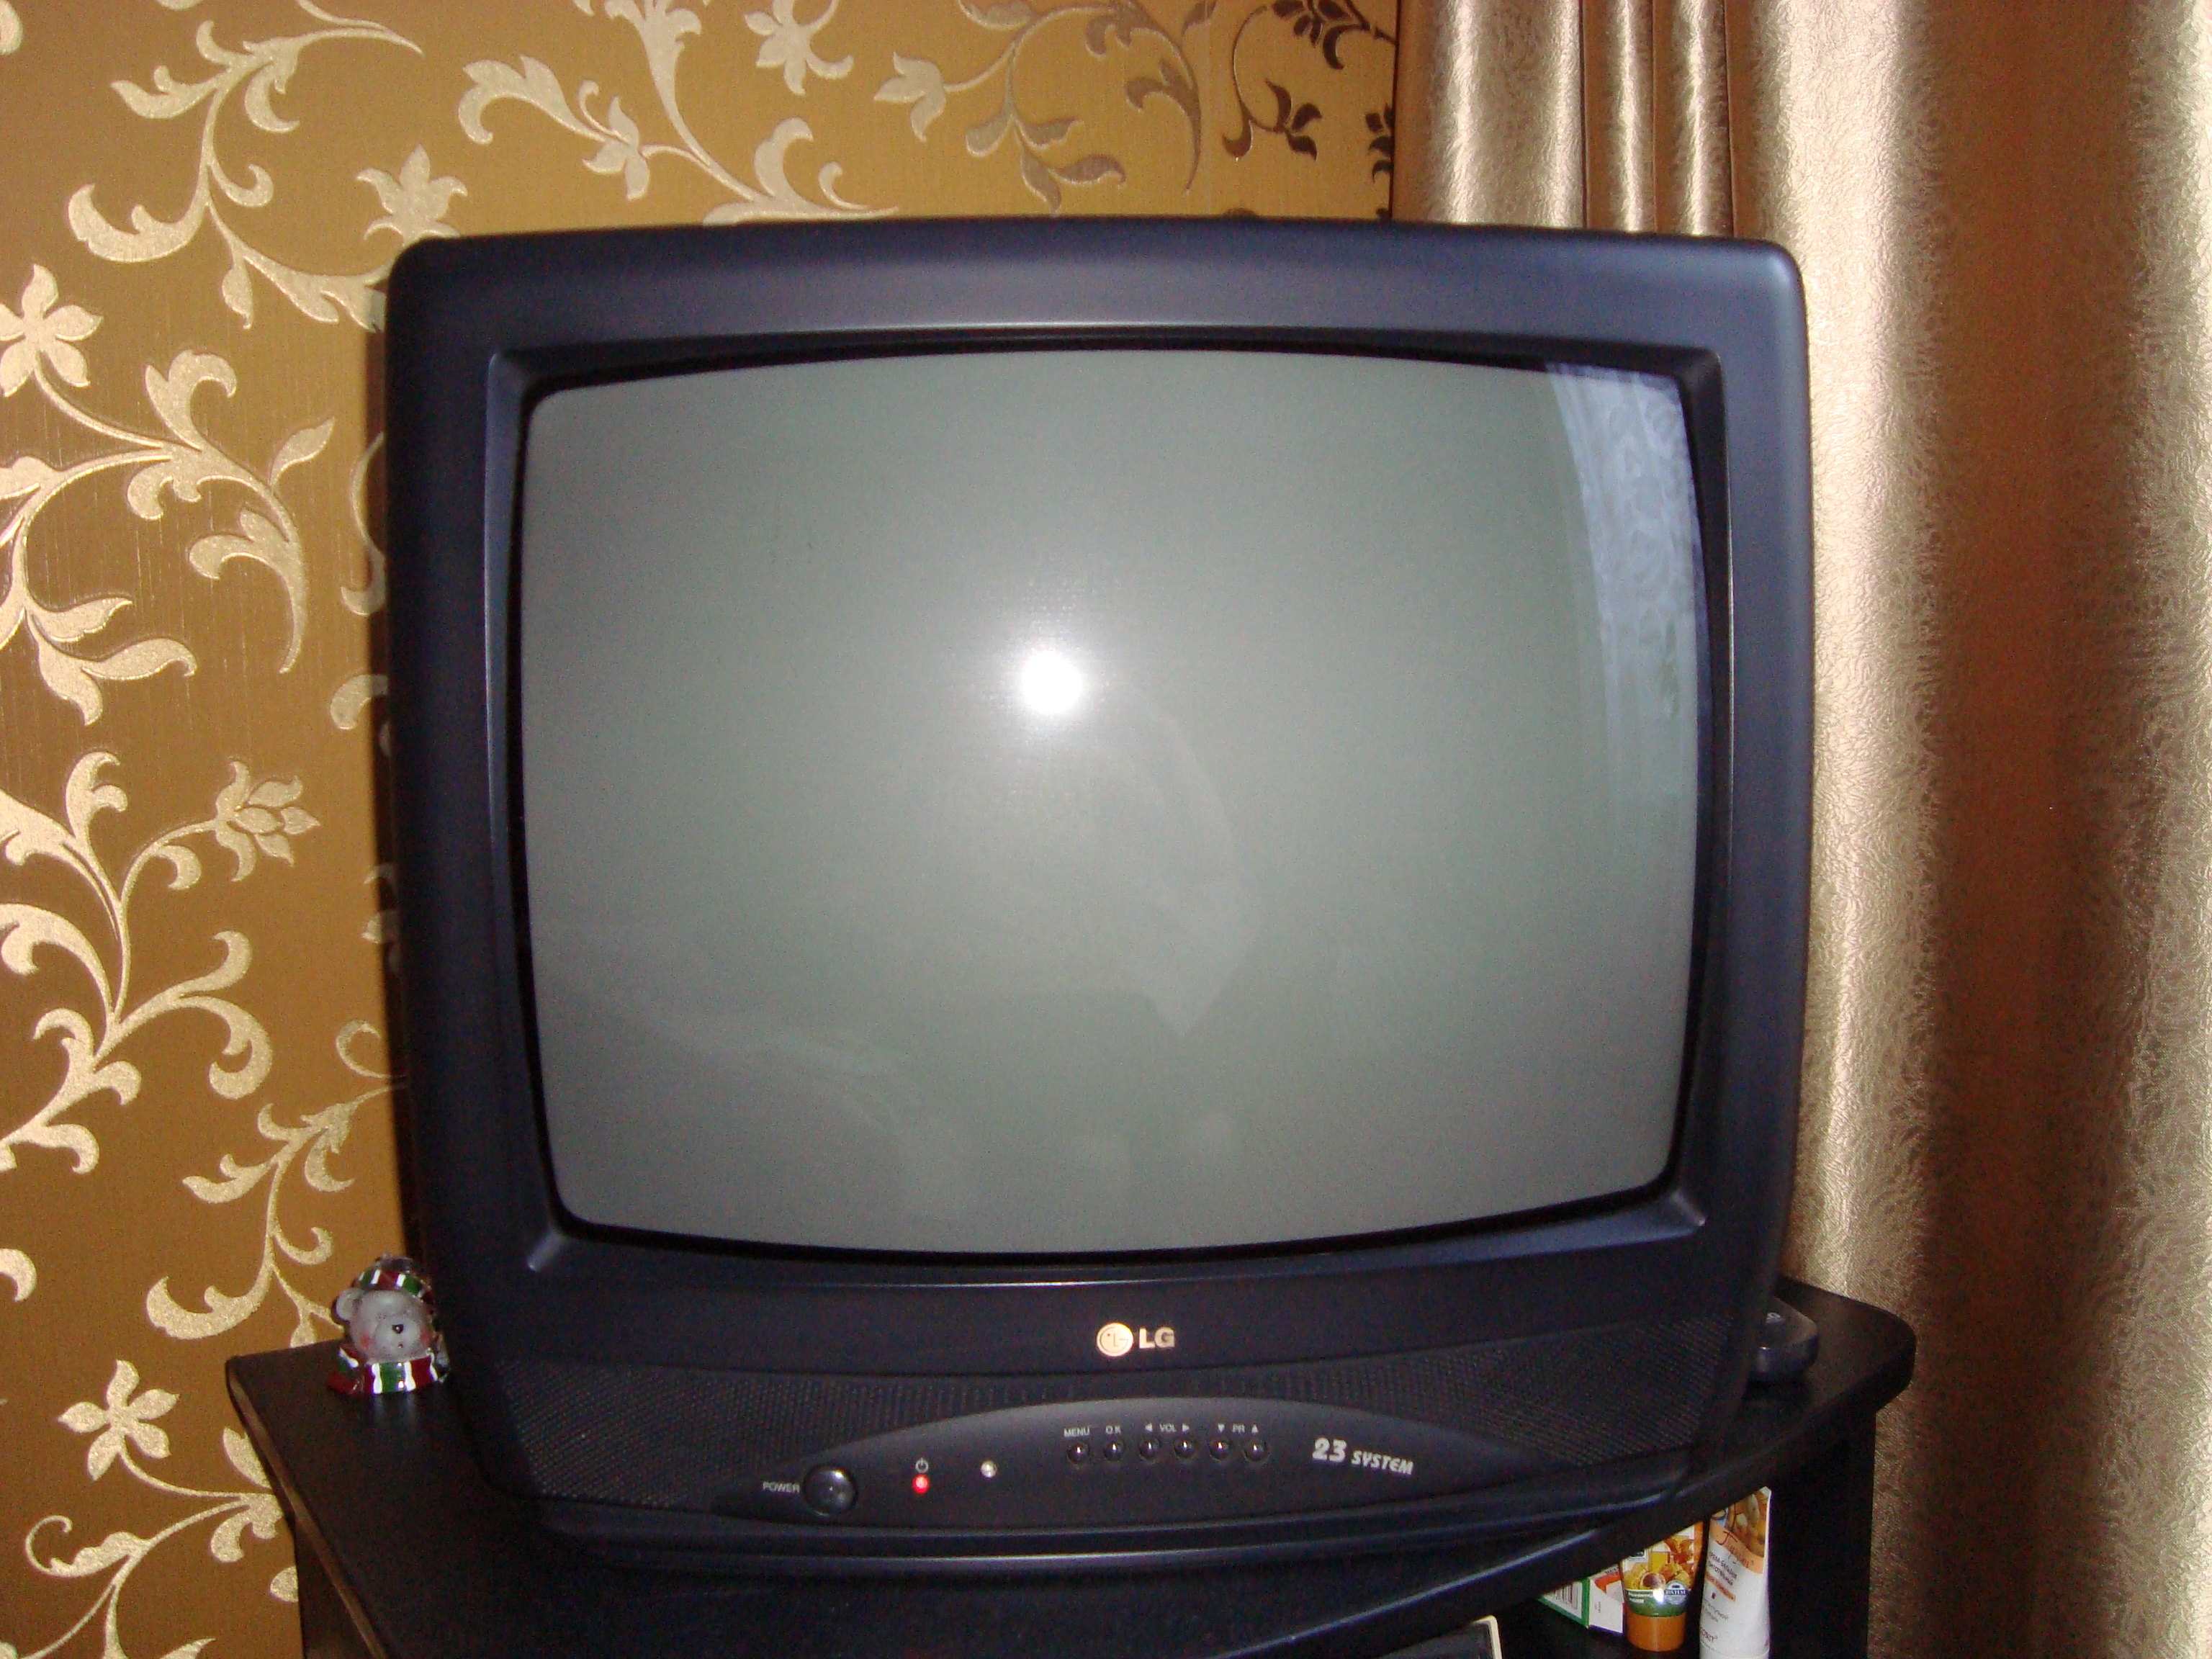 Авито тюмень телевизор. LG 21 дюйм кинескопный. Телевизор LG 21 дюйм кинескопный. Телевизор LG CF-21f39. LG CF 20f30.